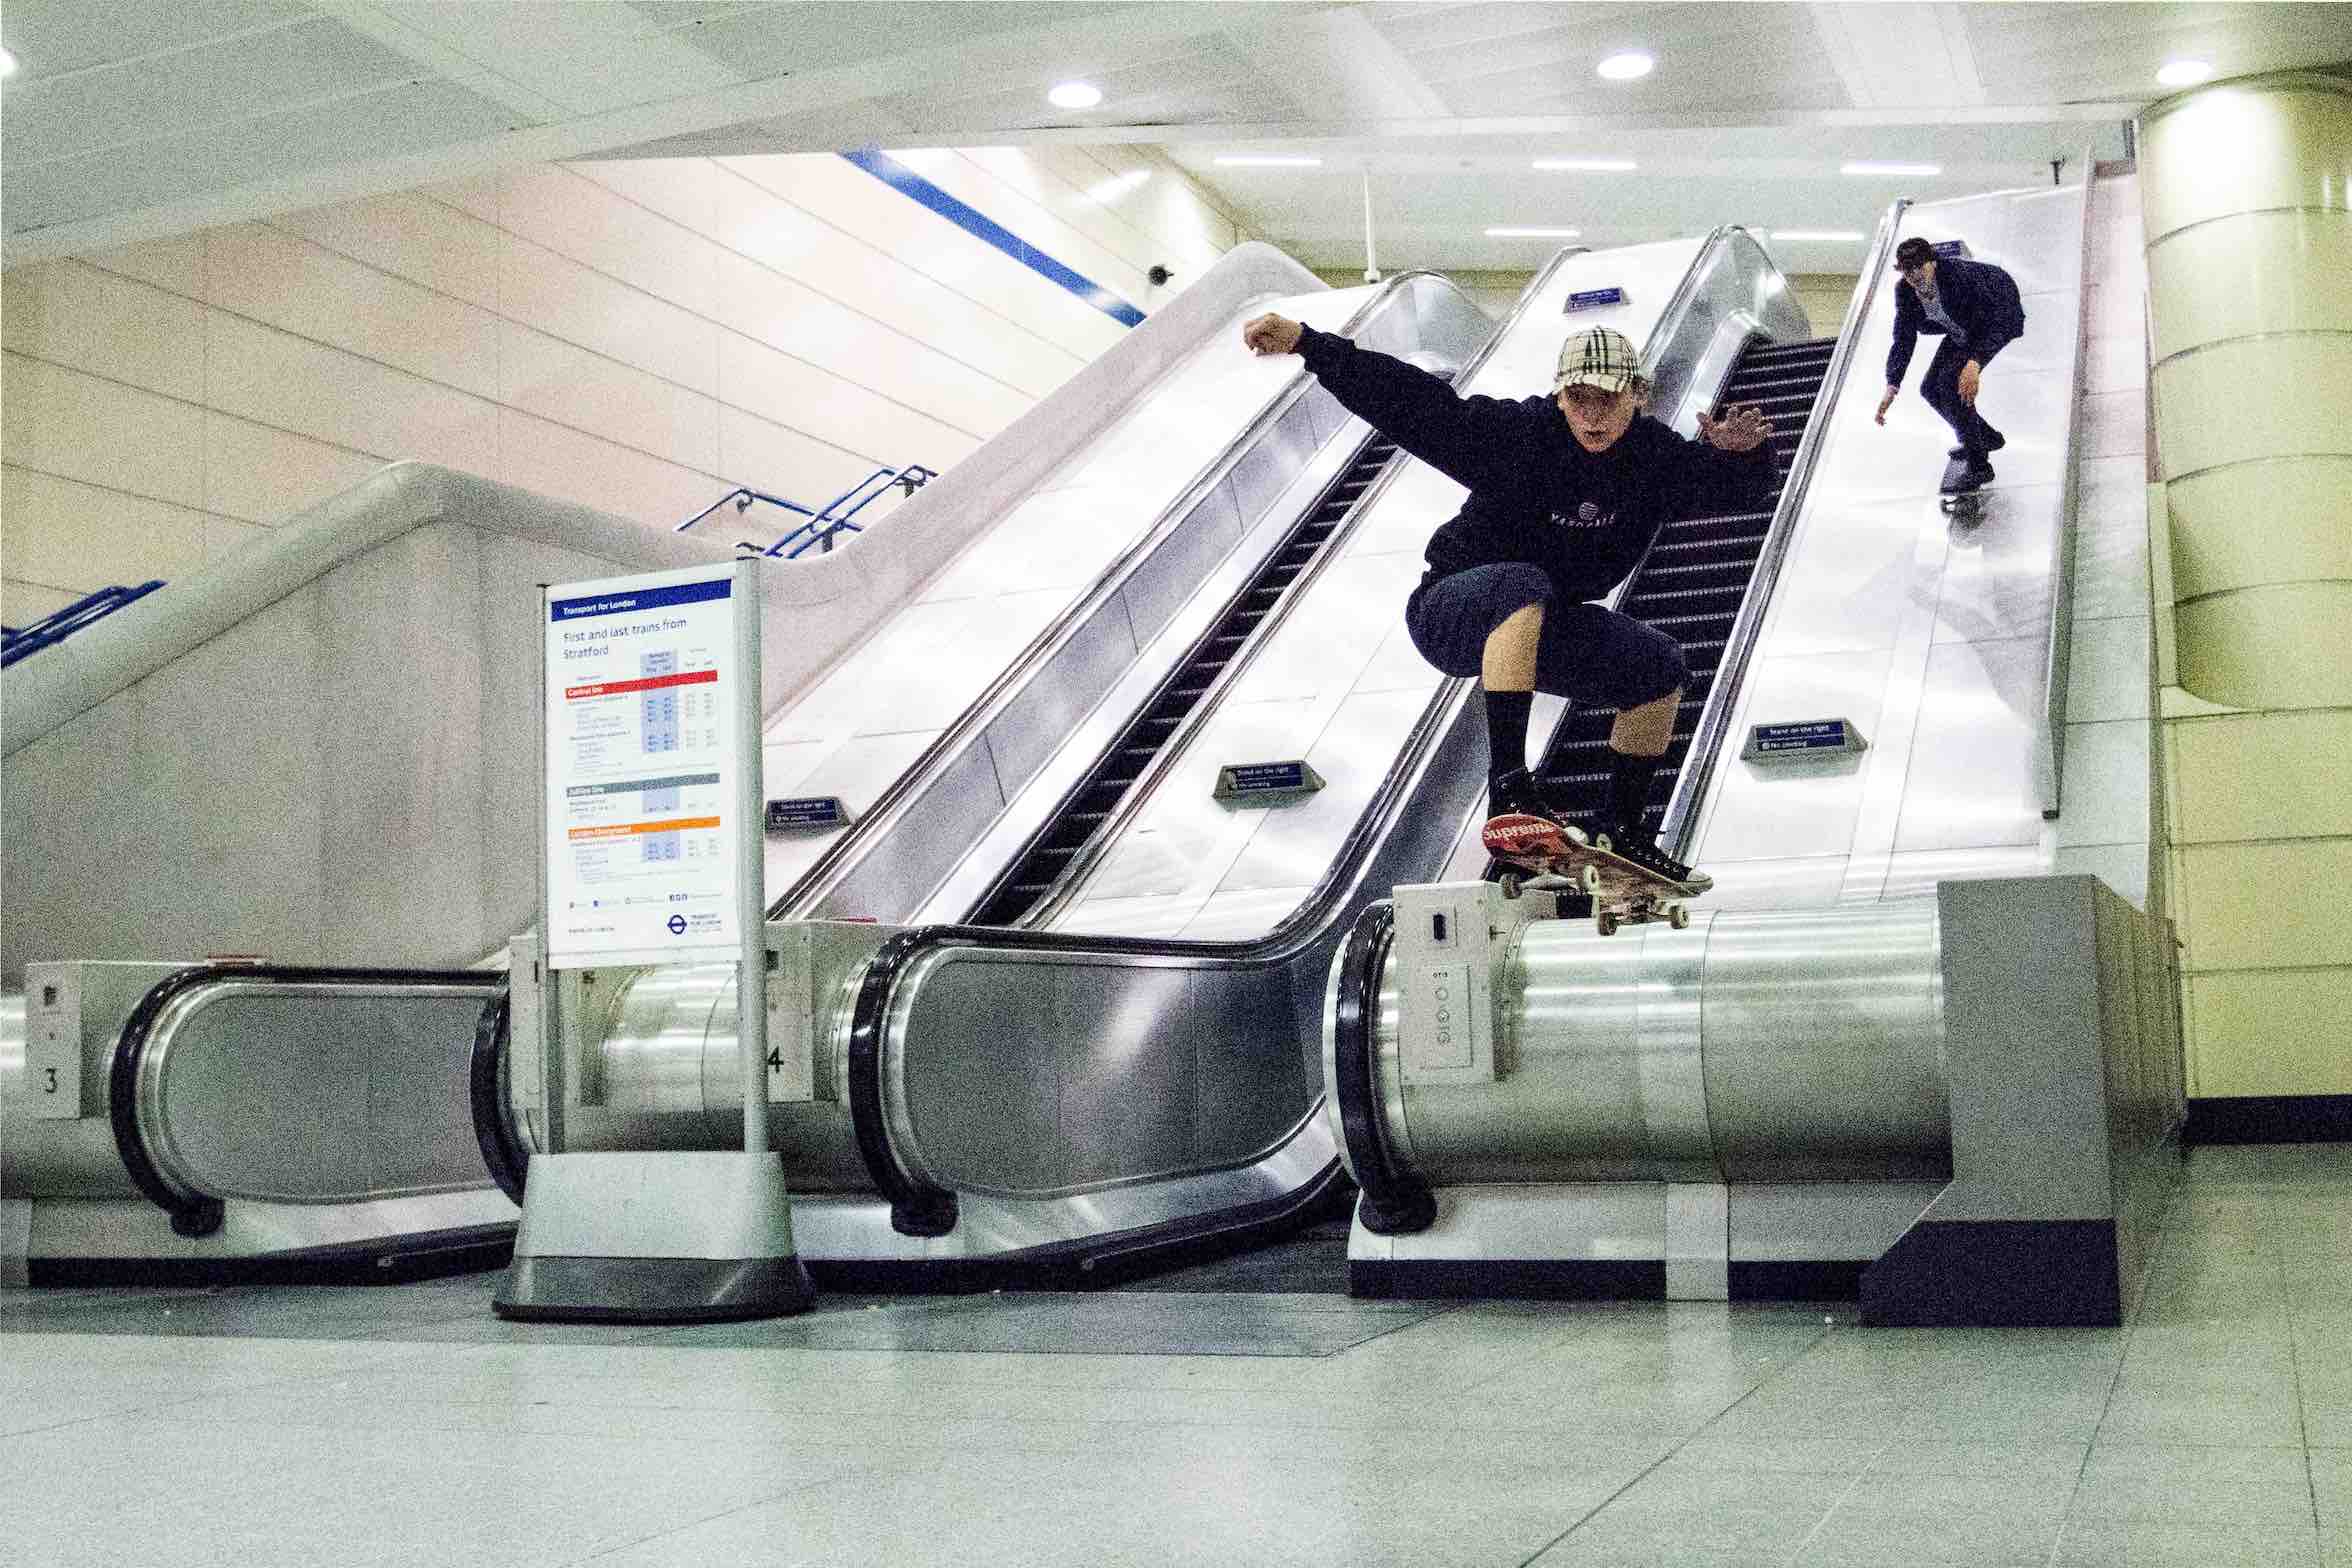 Skateboarder in the metro